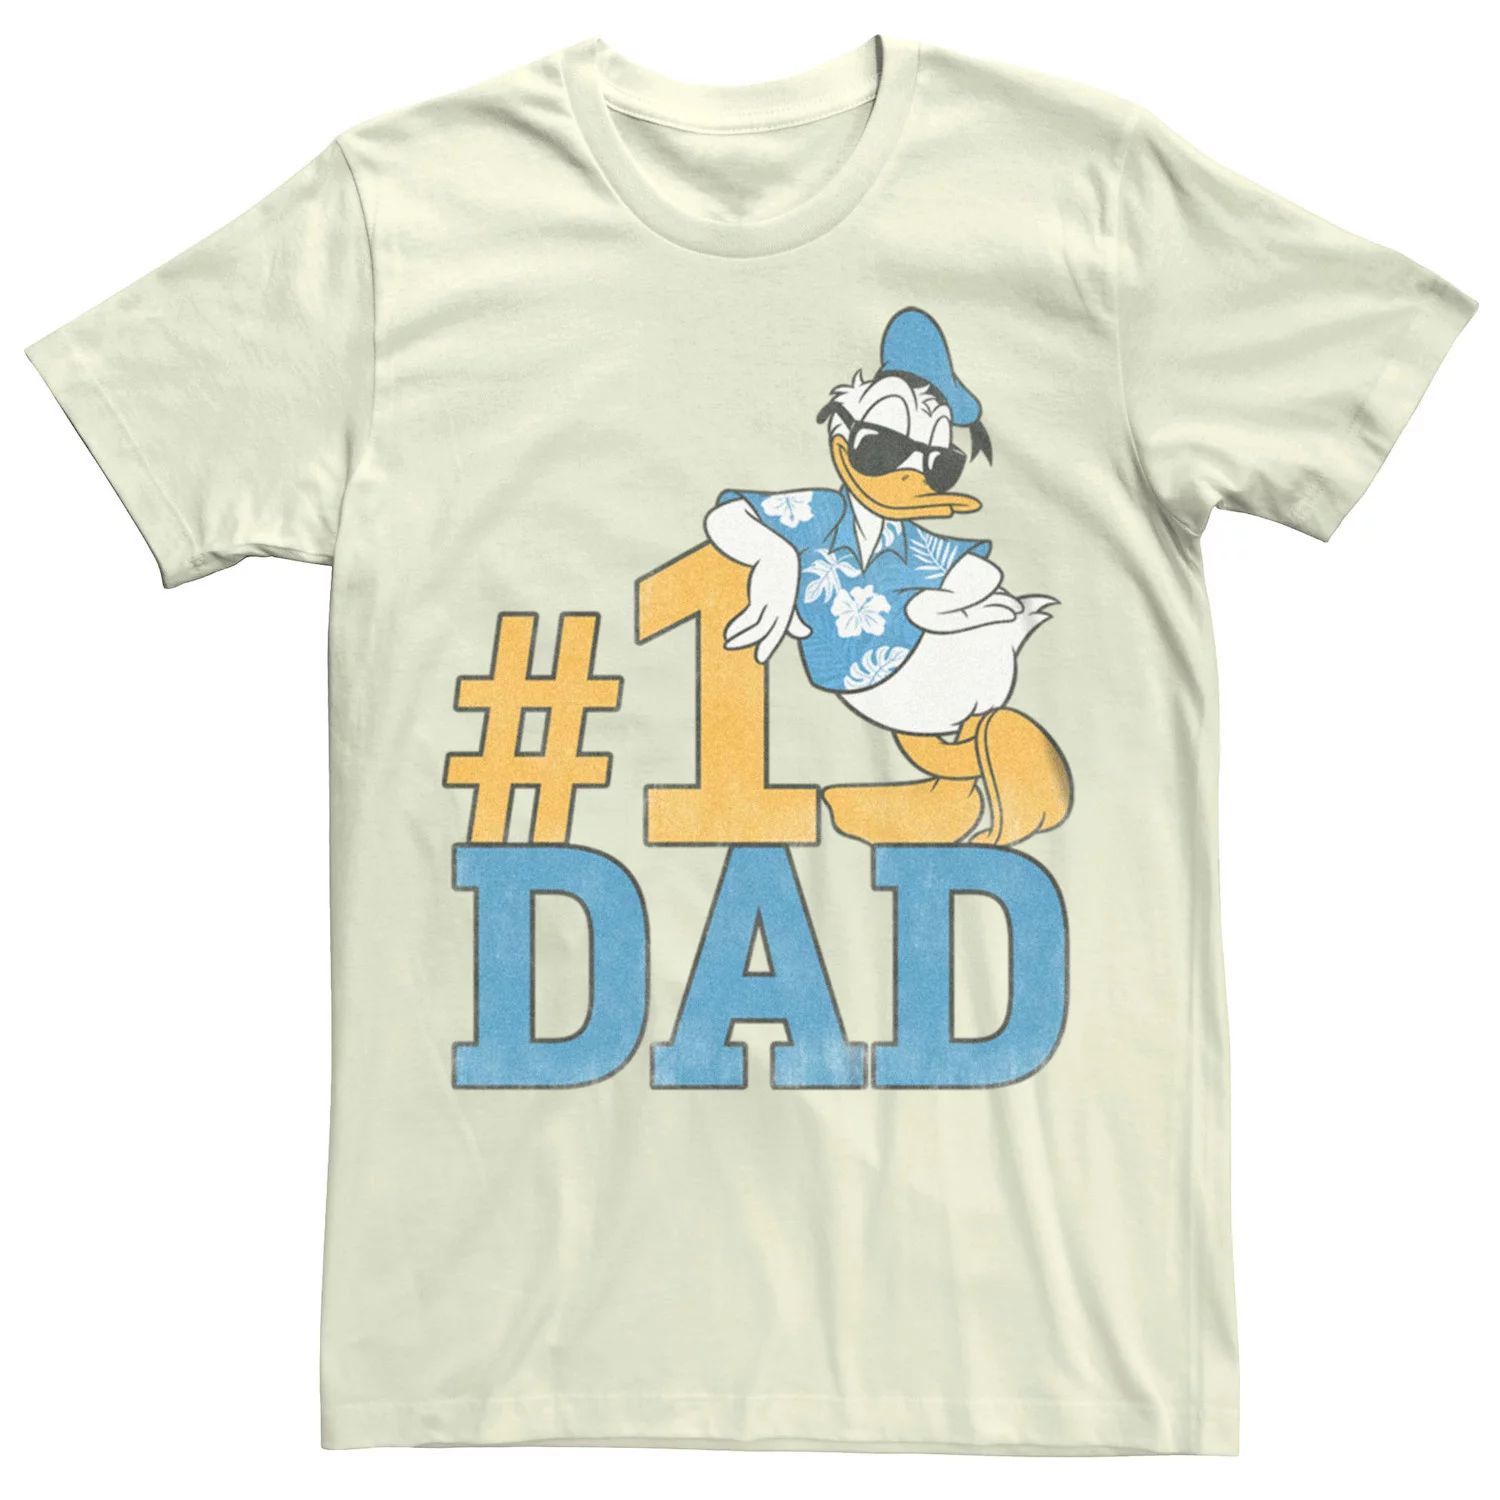 Мужская летняя футболка #1 с рисунком папы Disney's Donald Duck